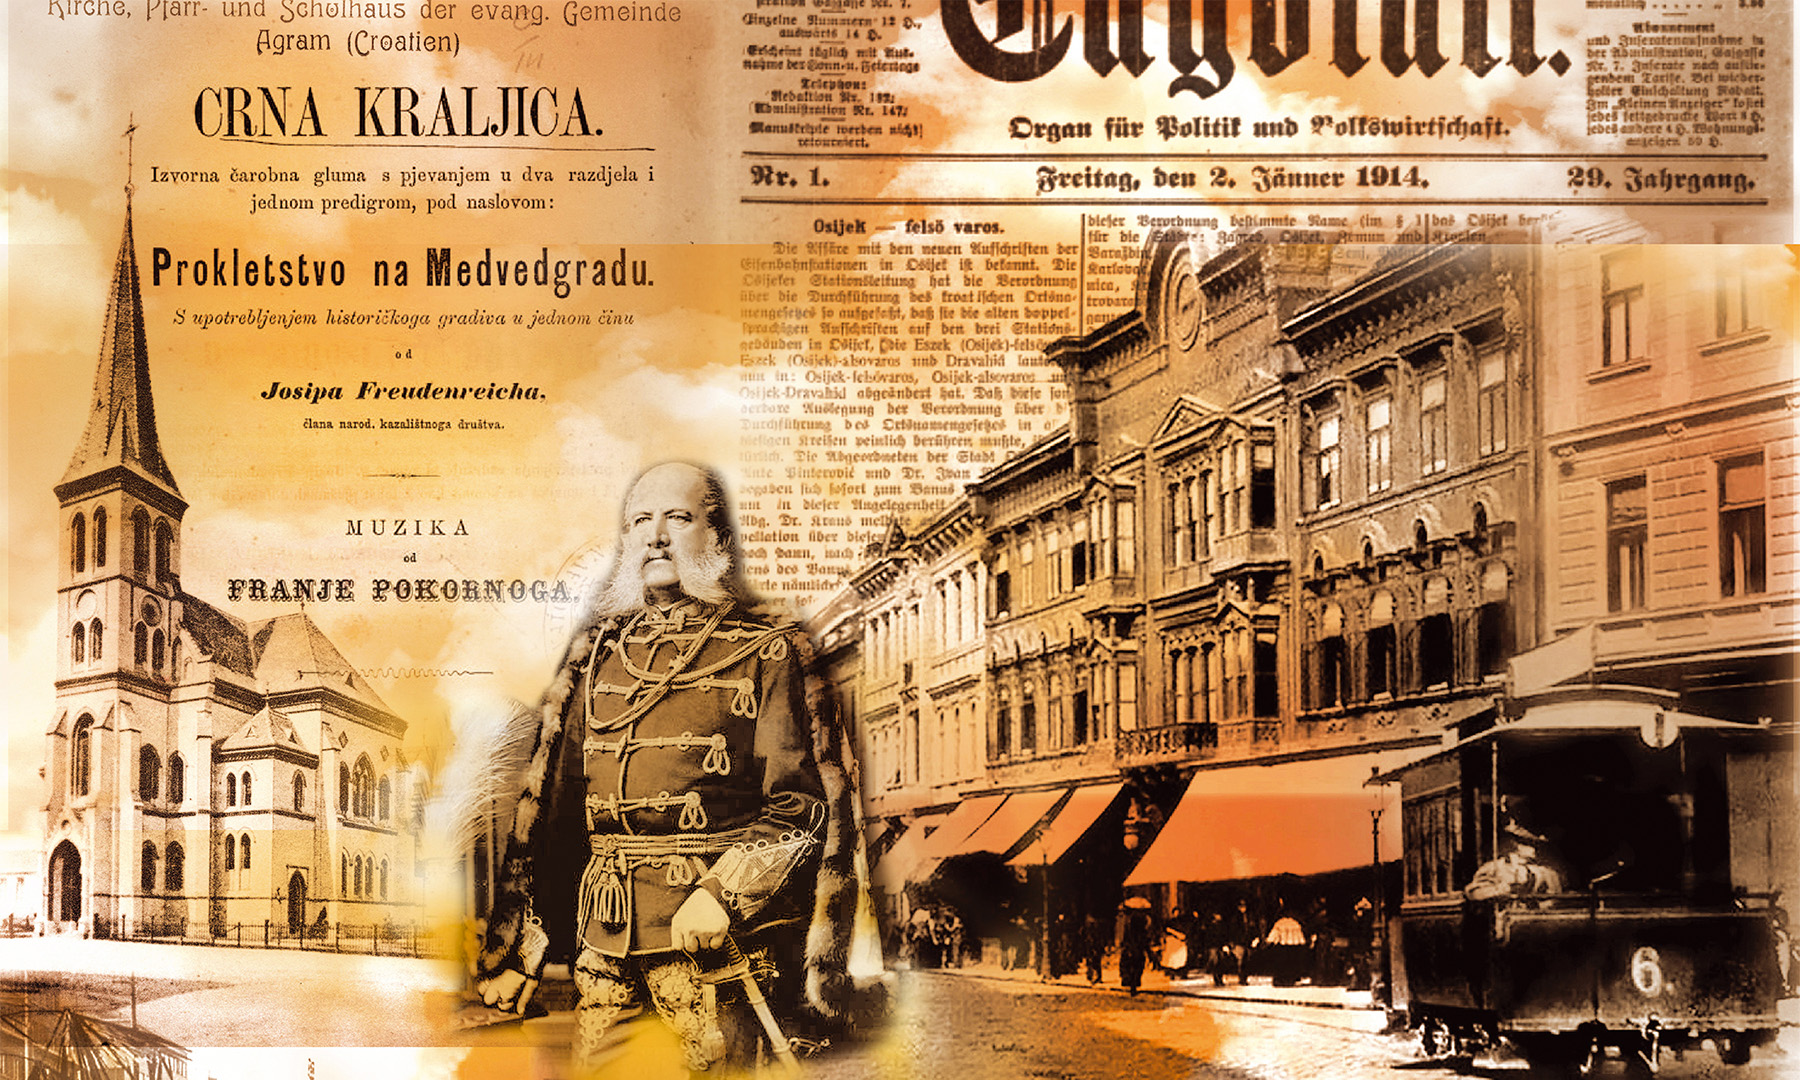 Deutsche in Zagreb und Umgebung durch die Jahrhunderte Placeholder image for selected event